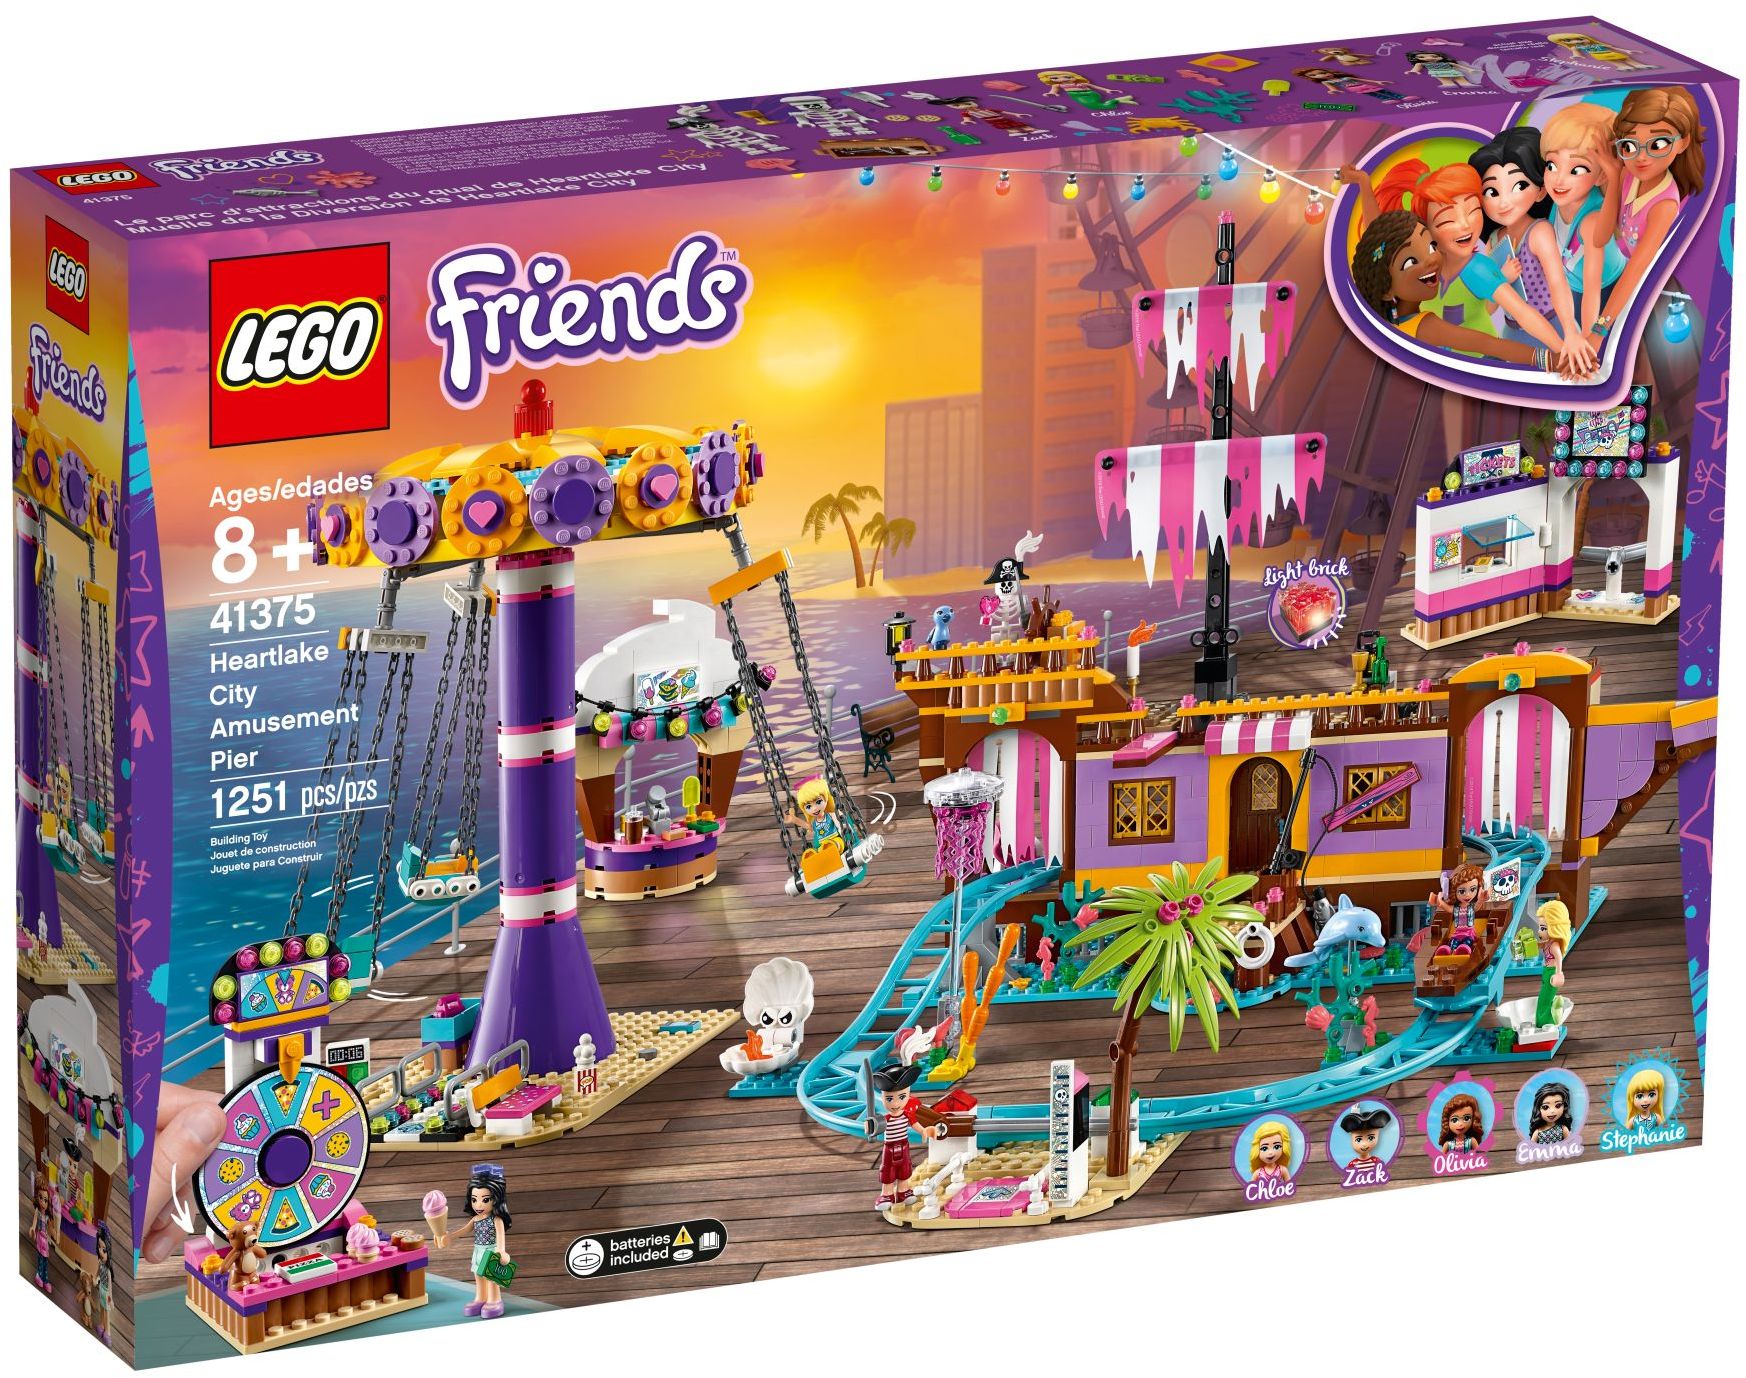 Sørge over Baglæns mørke Heartlake City Amusement Pier (41375) | LEGO Friends Wiki | Fandom